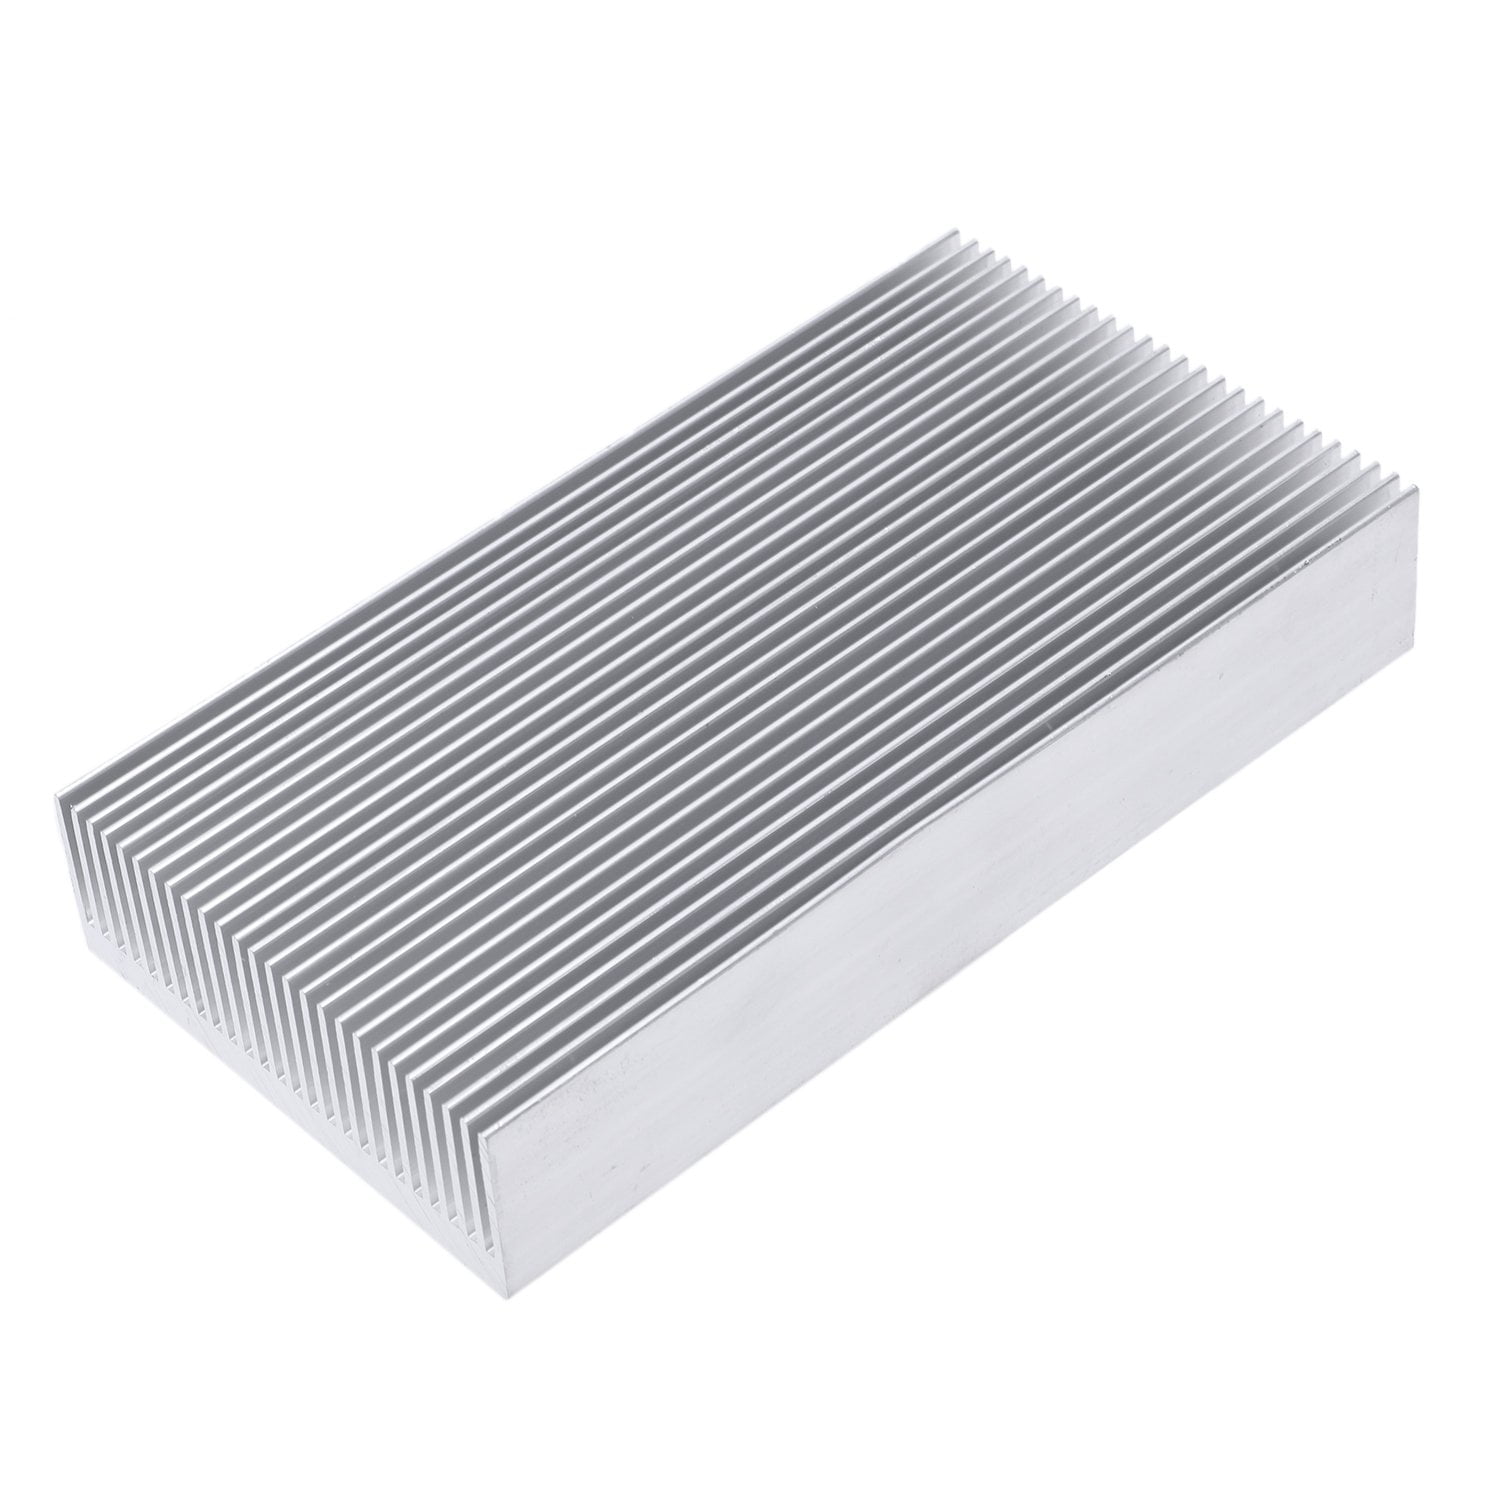 Aluminum Heatsink Cooling Fin 200mm x 69mm x 36mm for CPU Power Amplifier#3 